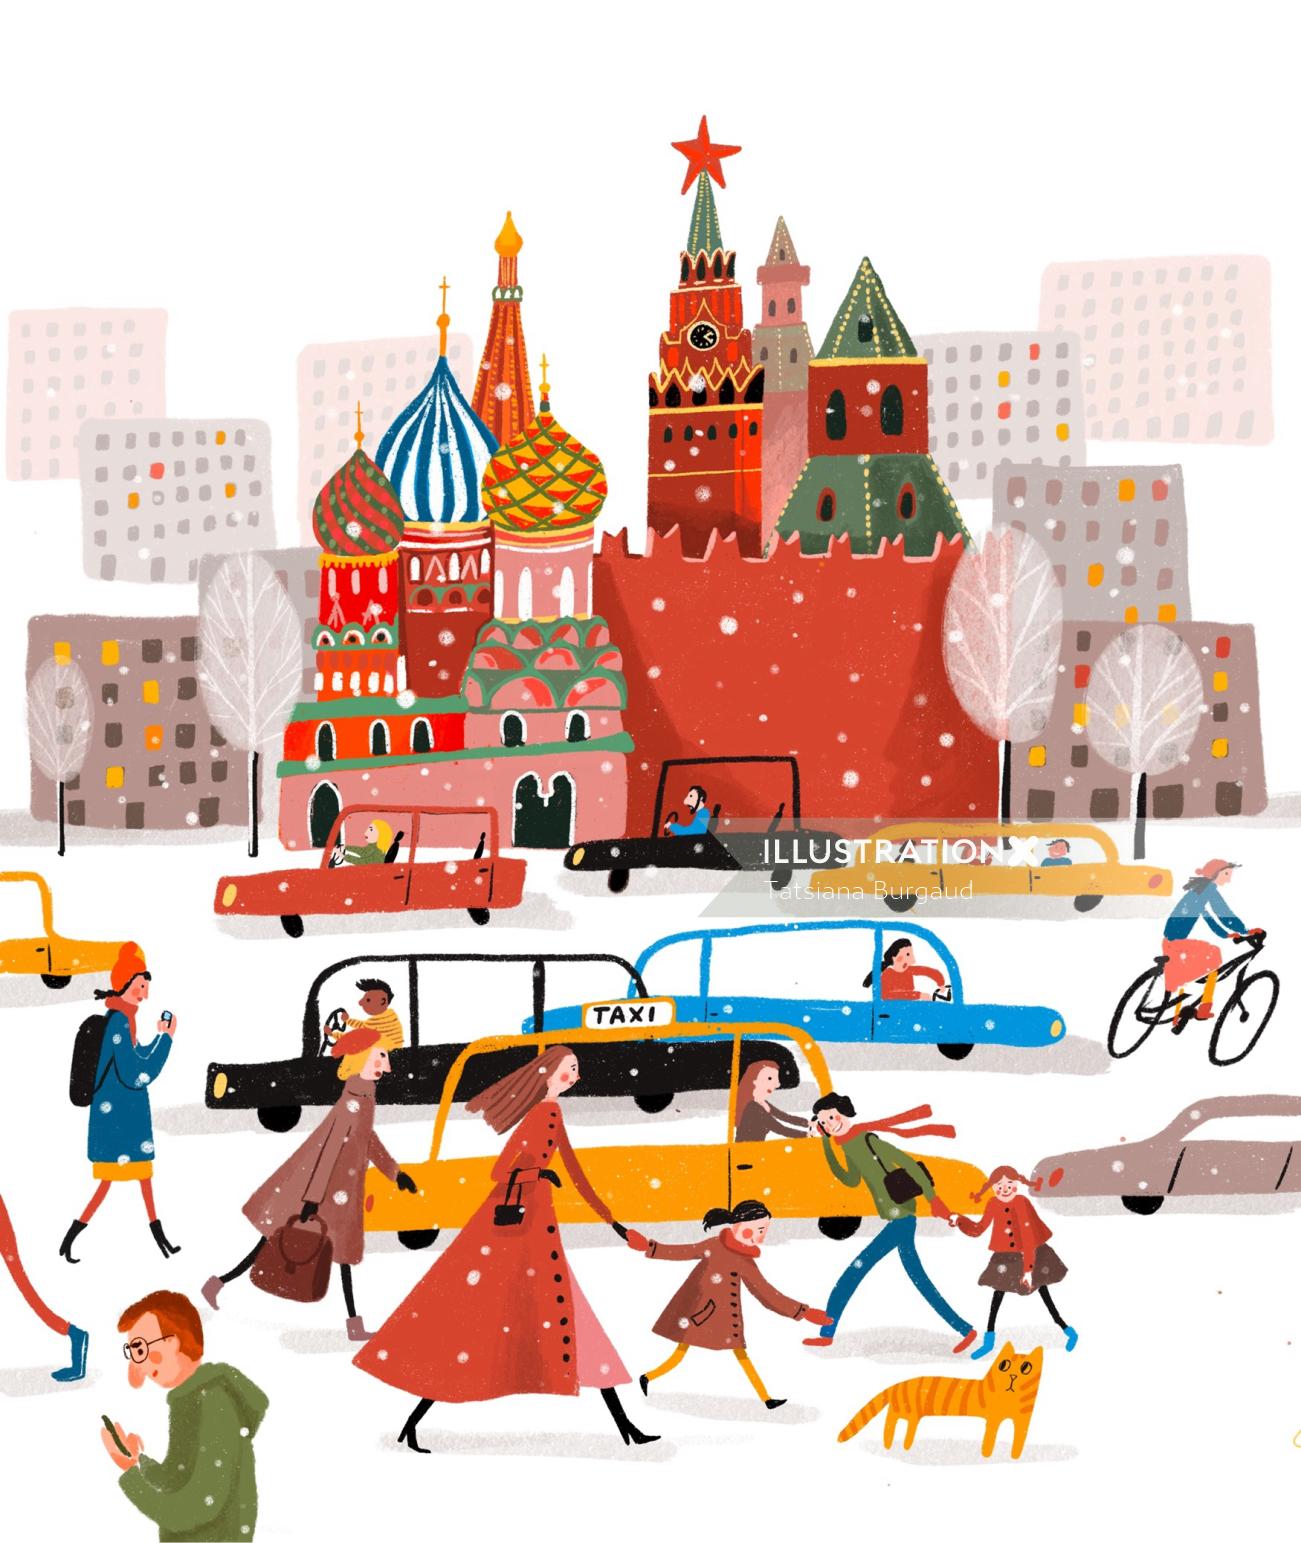 Famoso, multidão, festivo, Moscou, edifícios de arquitetura da cidade de Moscou